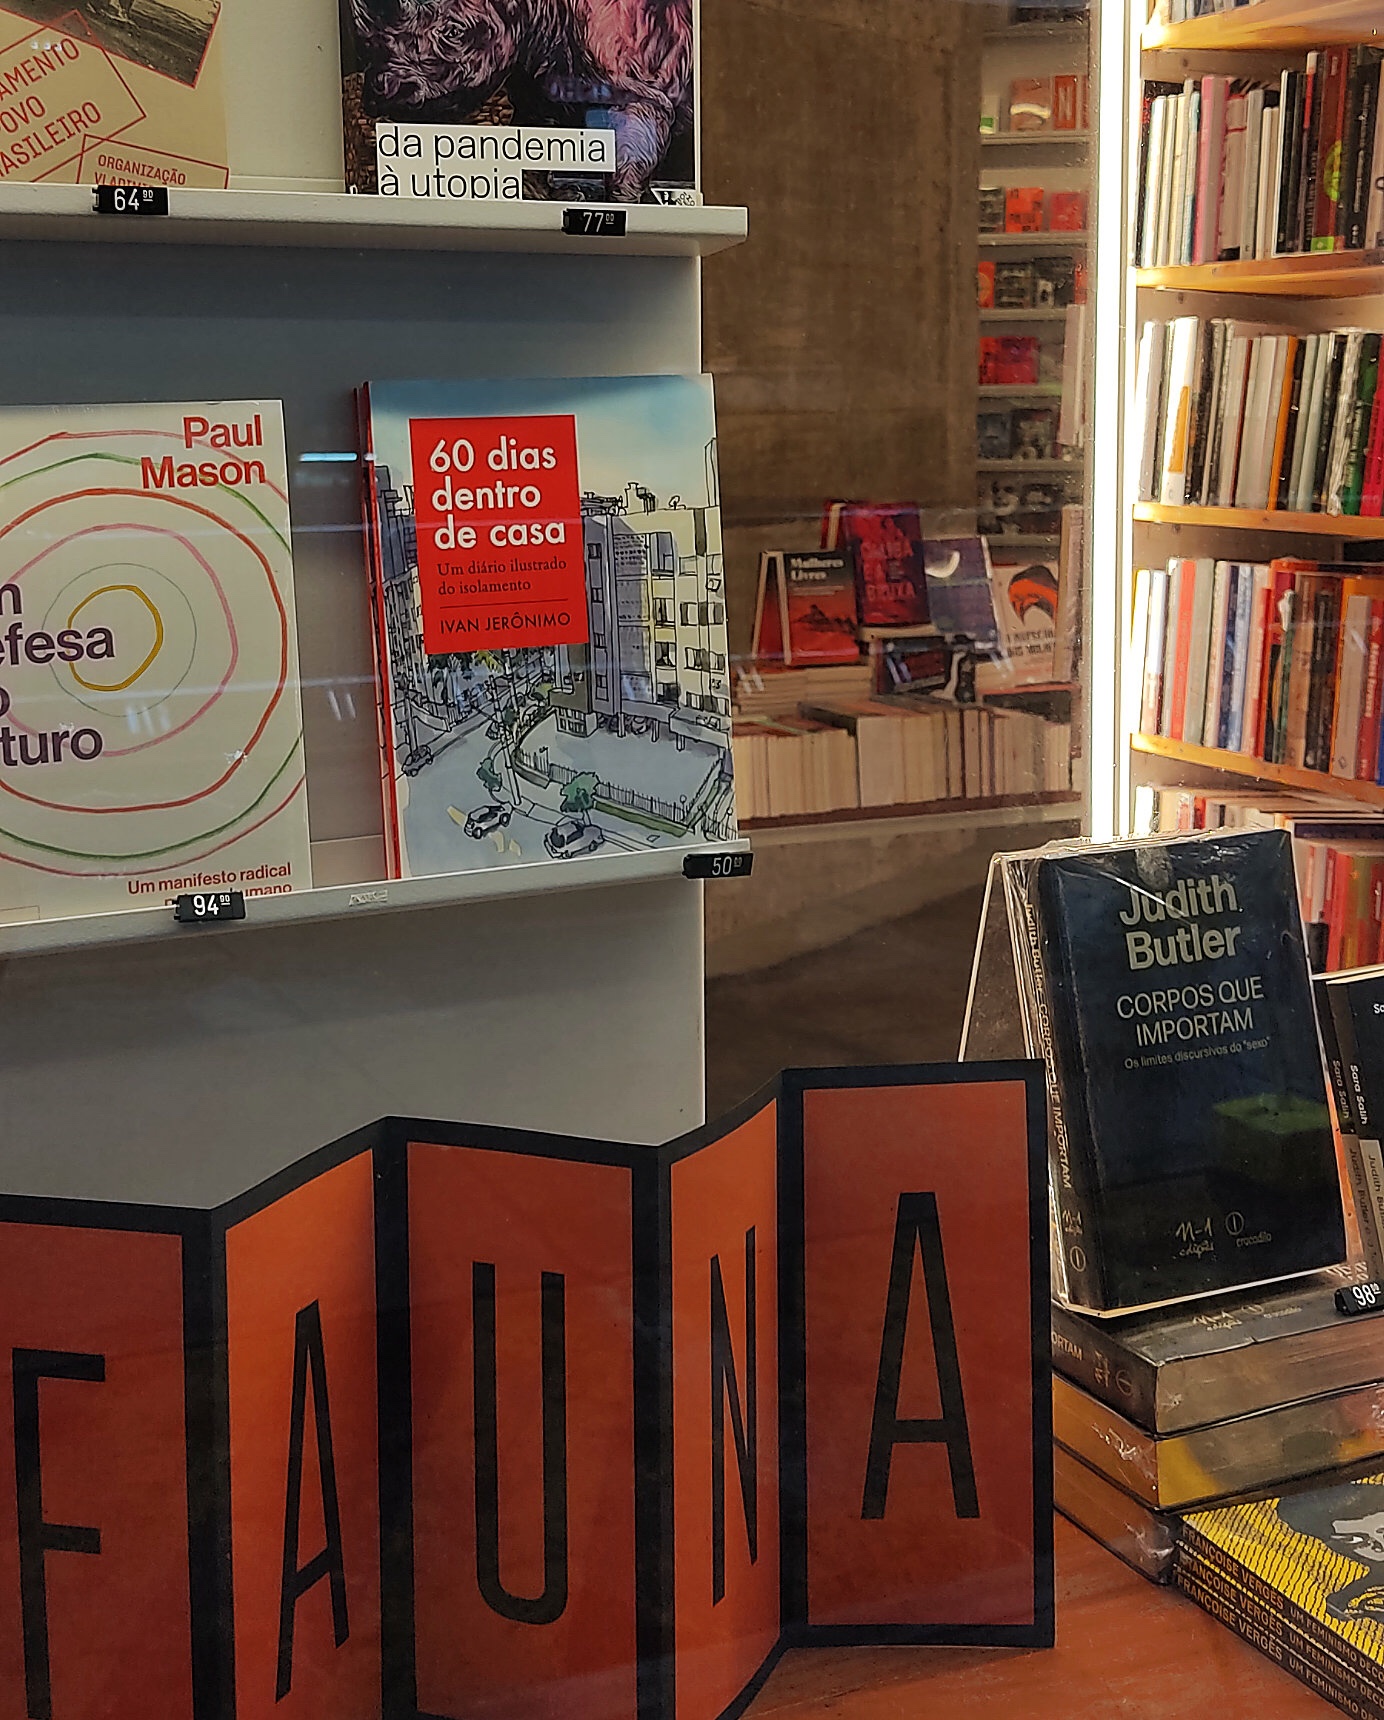 “60 dias dentro de casa” chega à livraria Megafauna em São Paulo